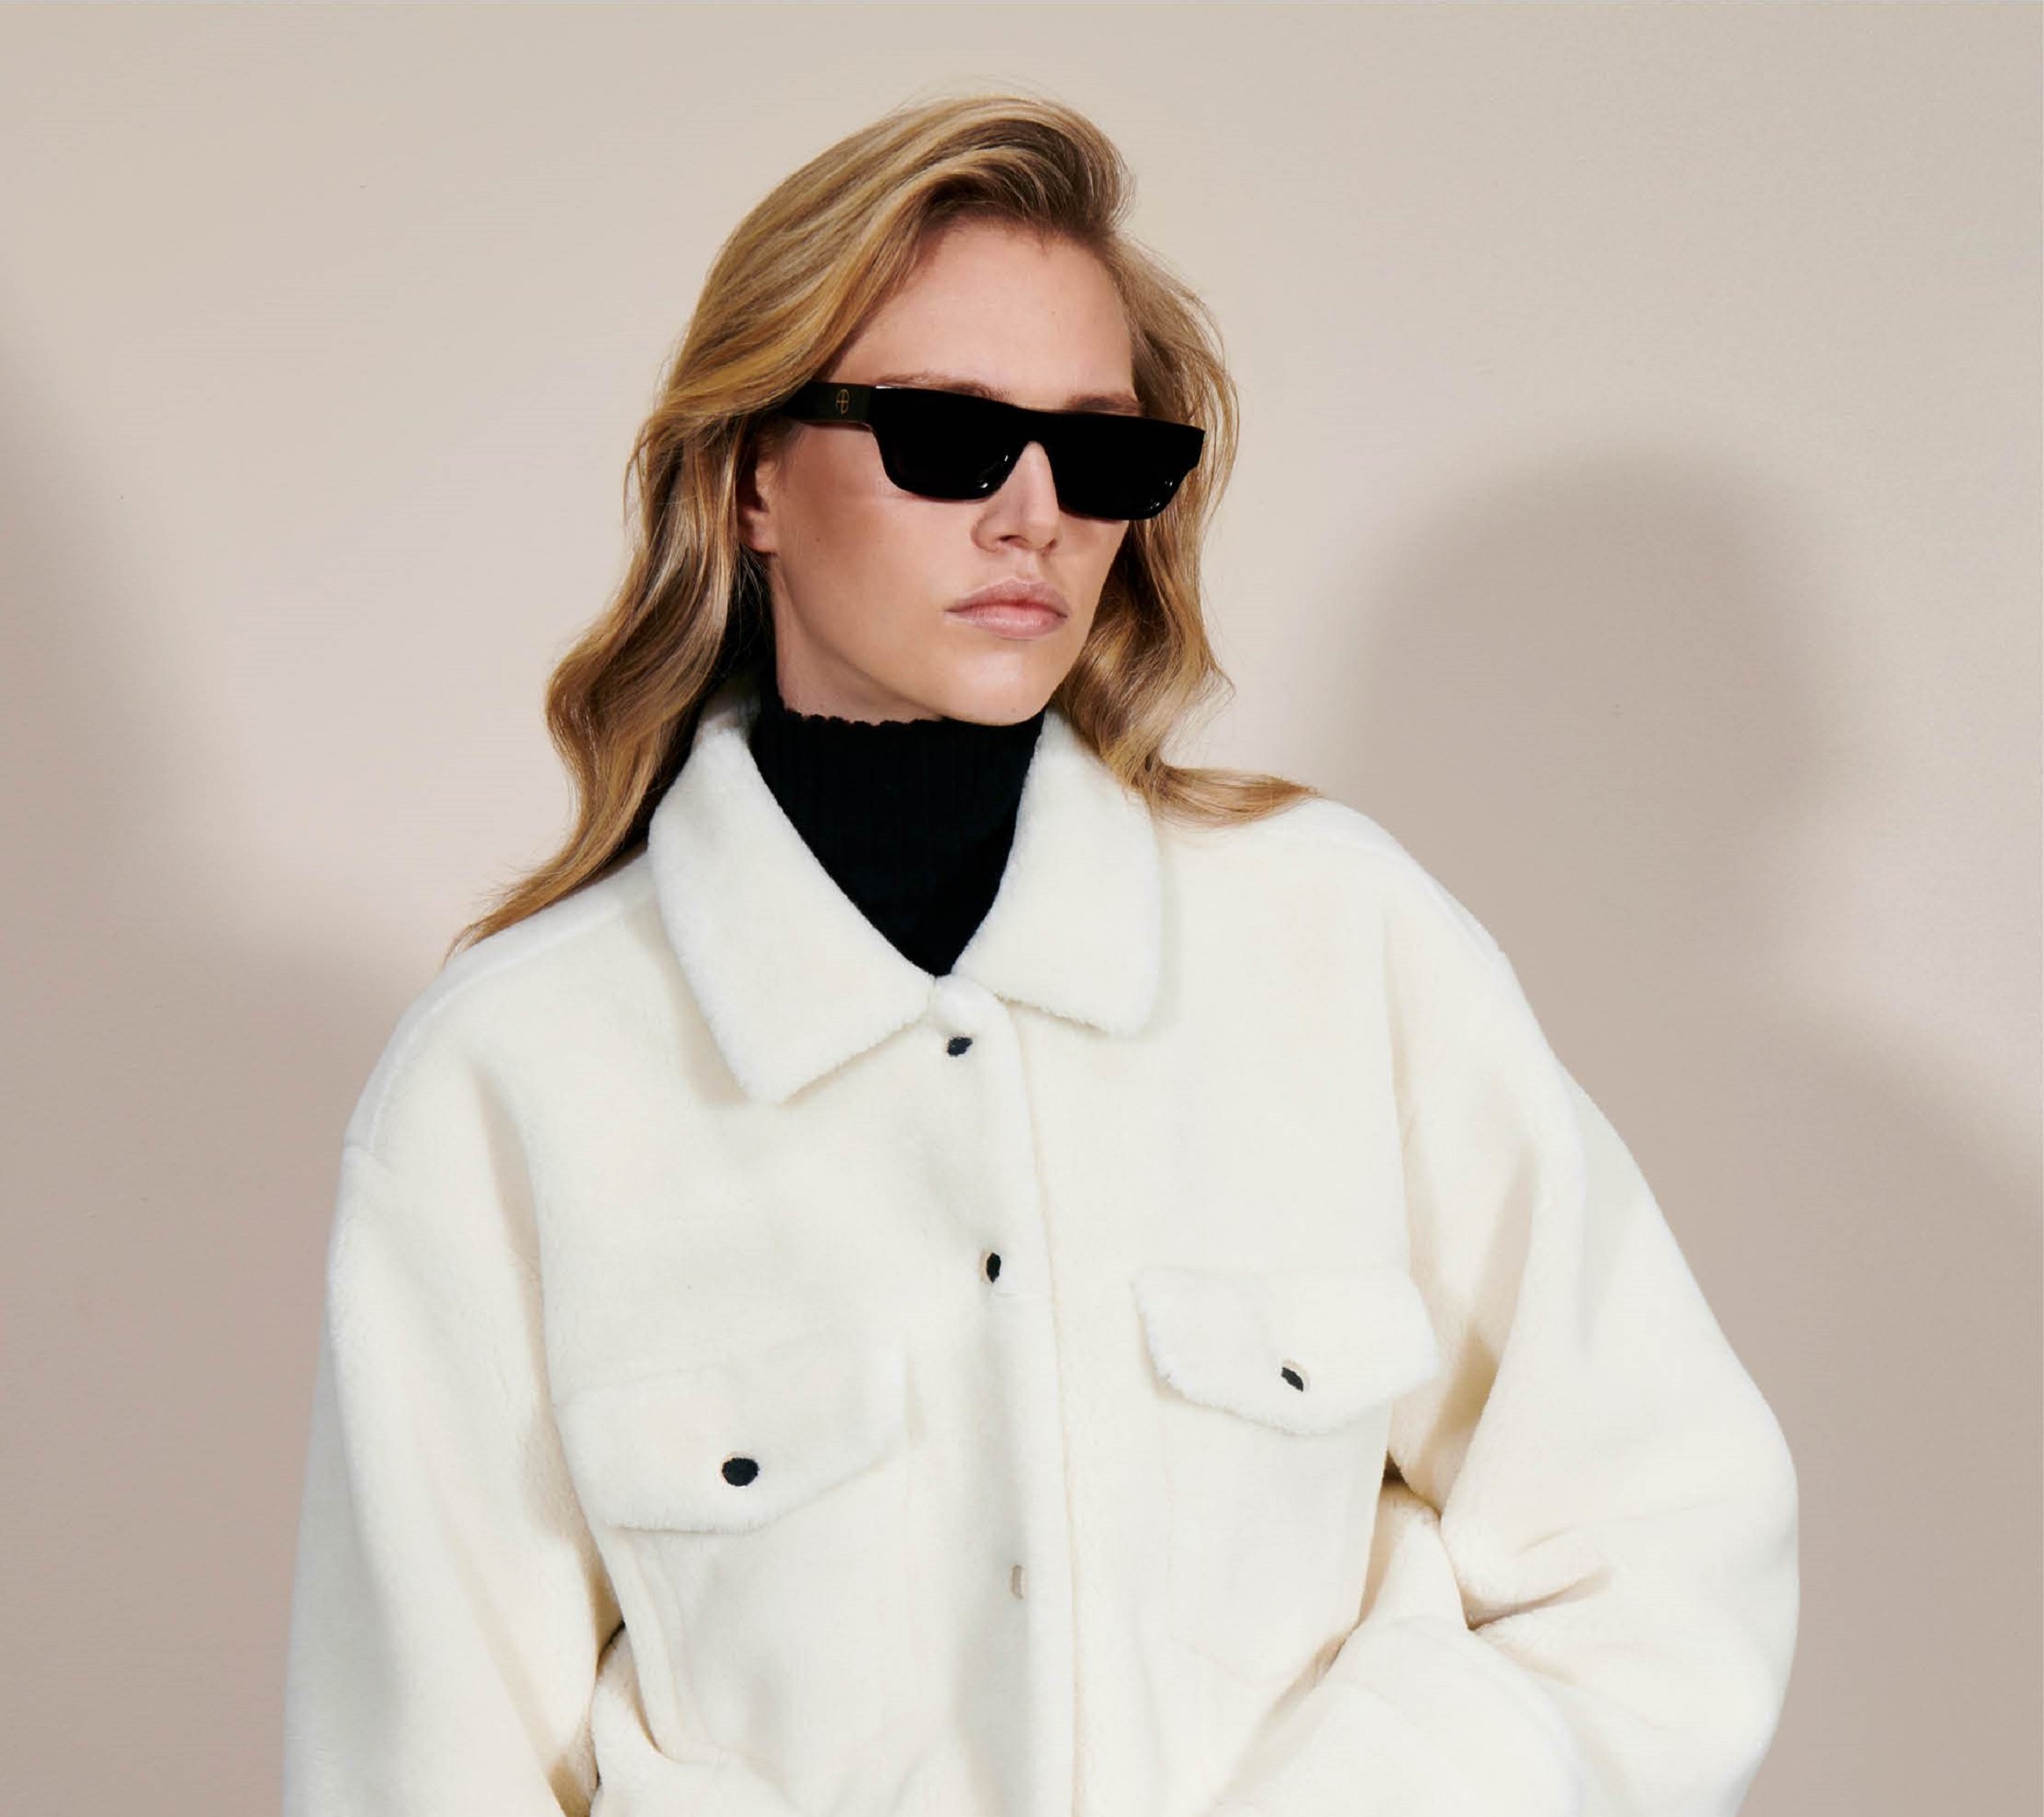 Model trägt Sonnenbrille und weisse Jacke von Anine Bing Herbst/Winter Kollektion